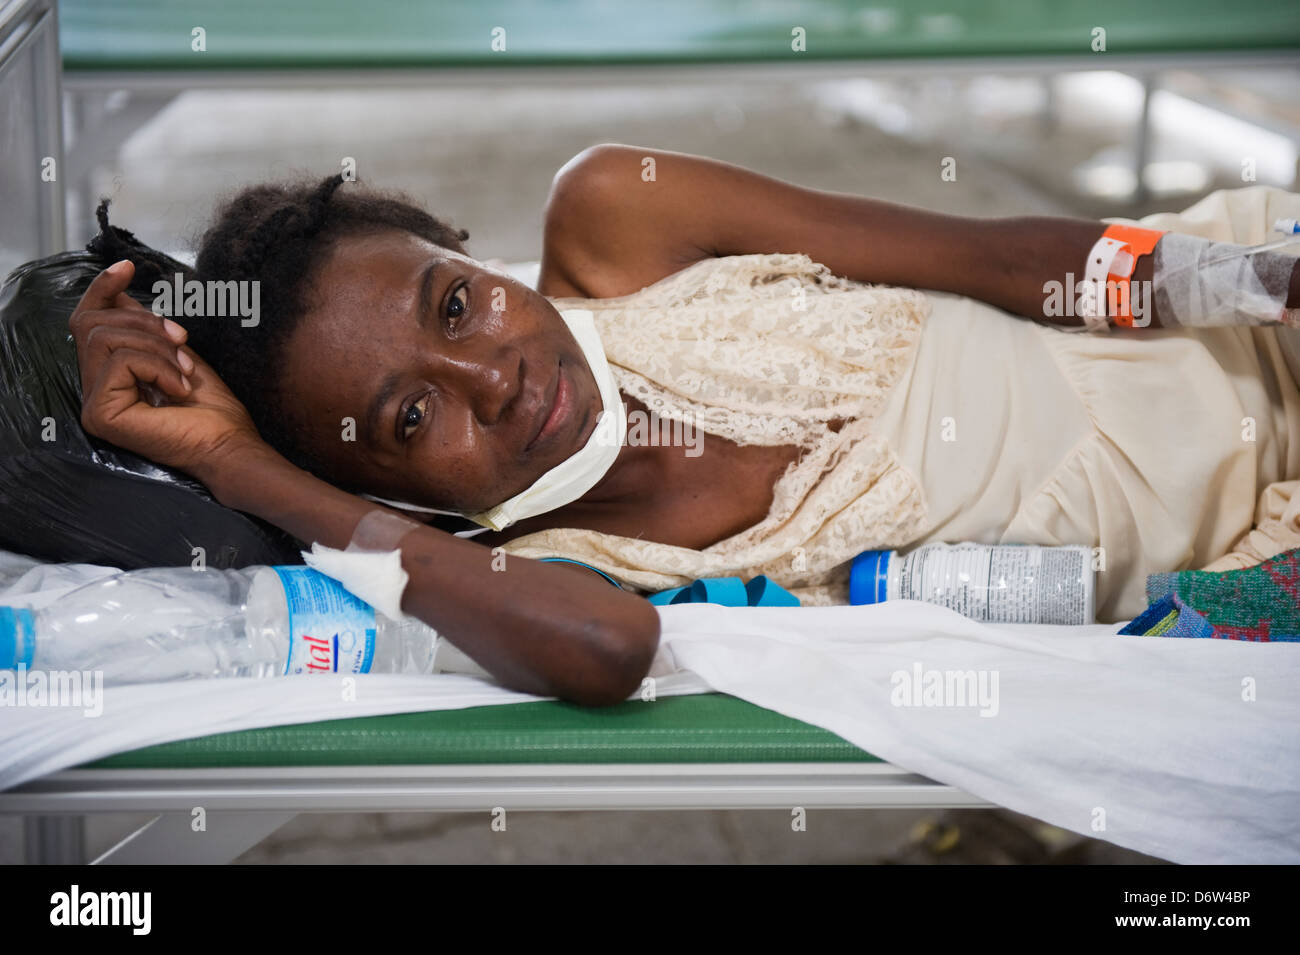 TB VIH sufriente, paciente del hospital tras el terremoto de enero de 2010, el Hospital General de Port-au-Prince, Haití, el Caribe Foto de stock